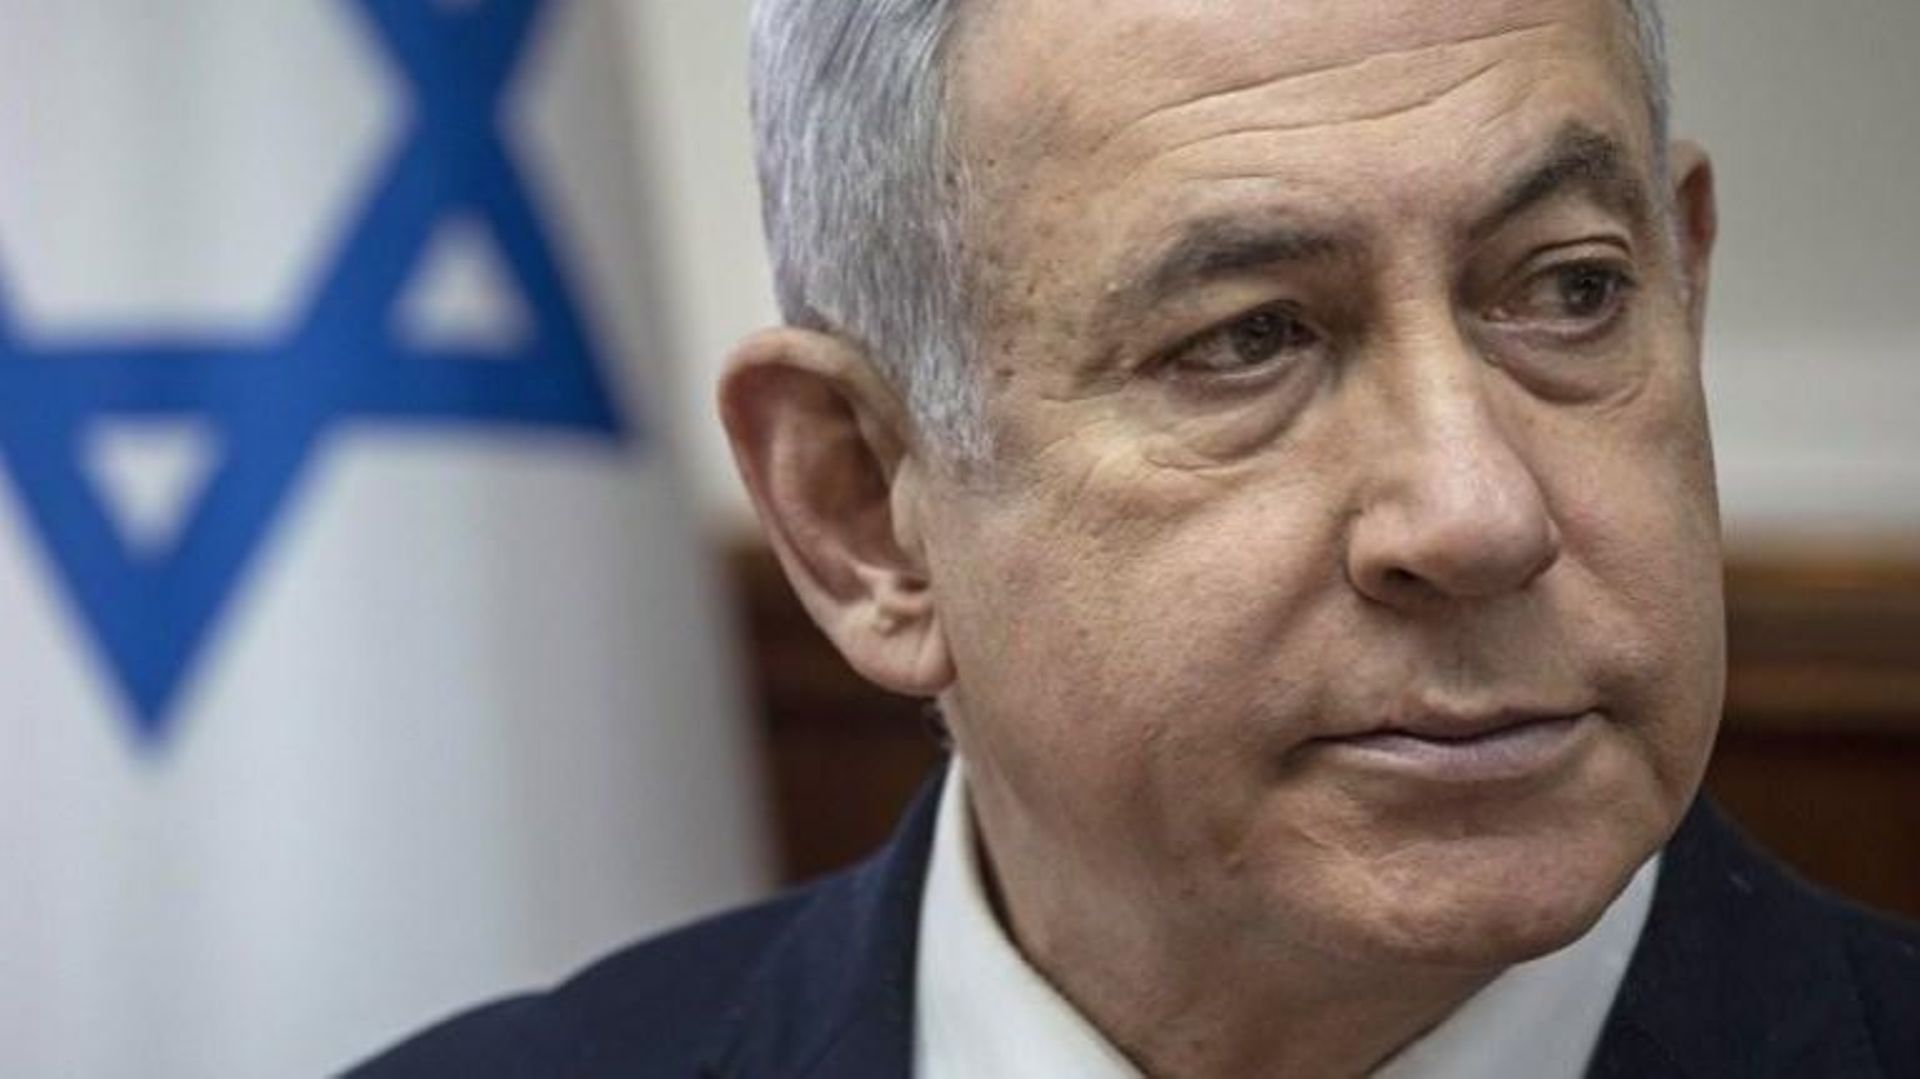 Netanyahu échoue à former un gouvernement, ouvrant la voie à ses rivaux